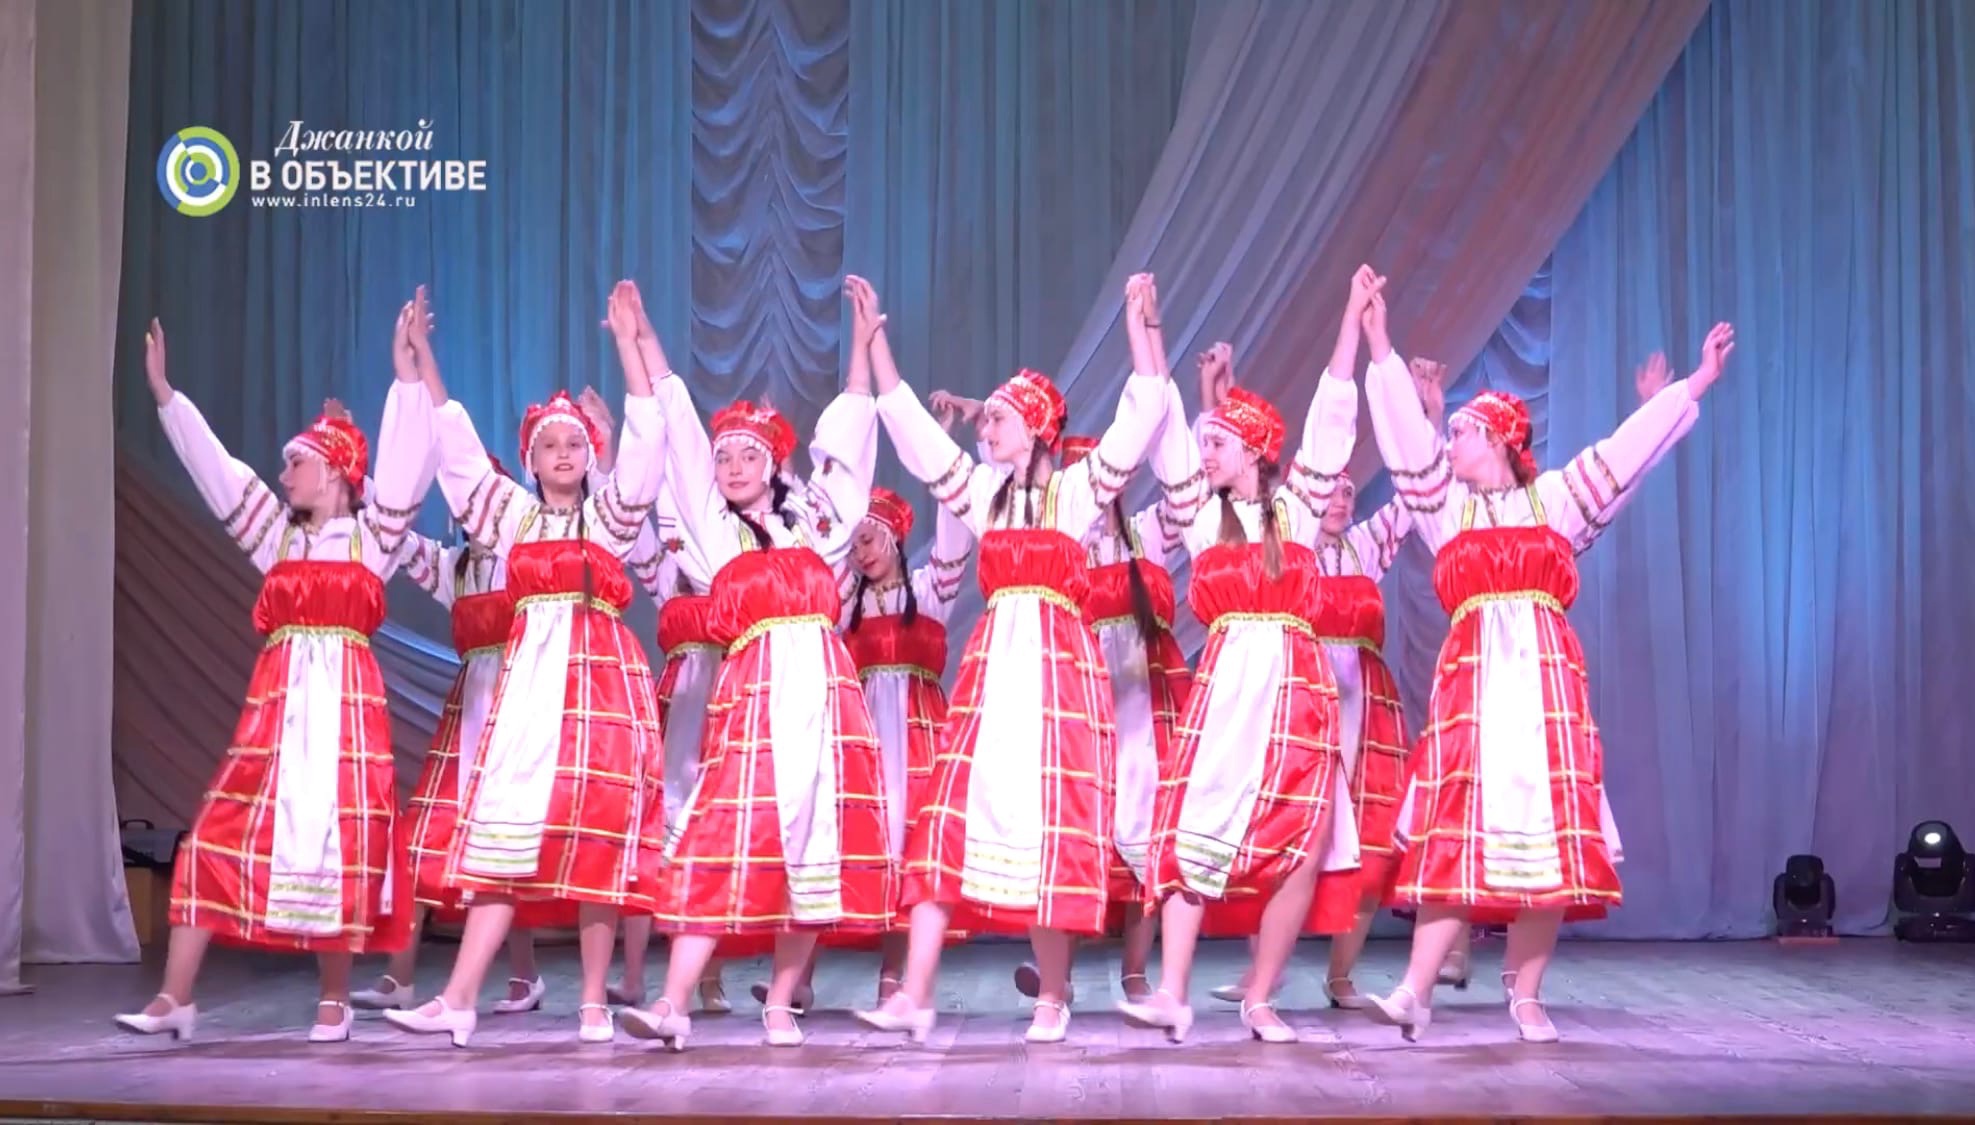 Джанкой в объективе Танцевальный коллектив УЛЫБКА дал отчётный концерт - 2022 Улыбка. Разнообразие культур в танце